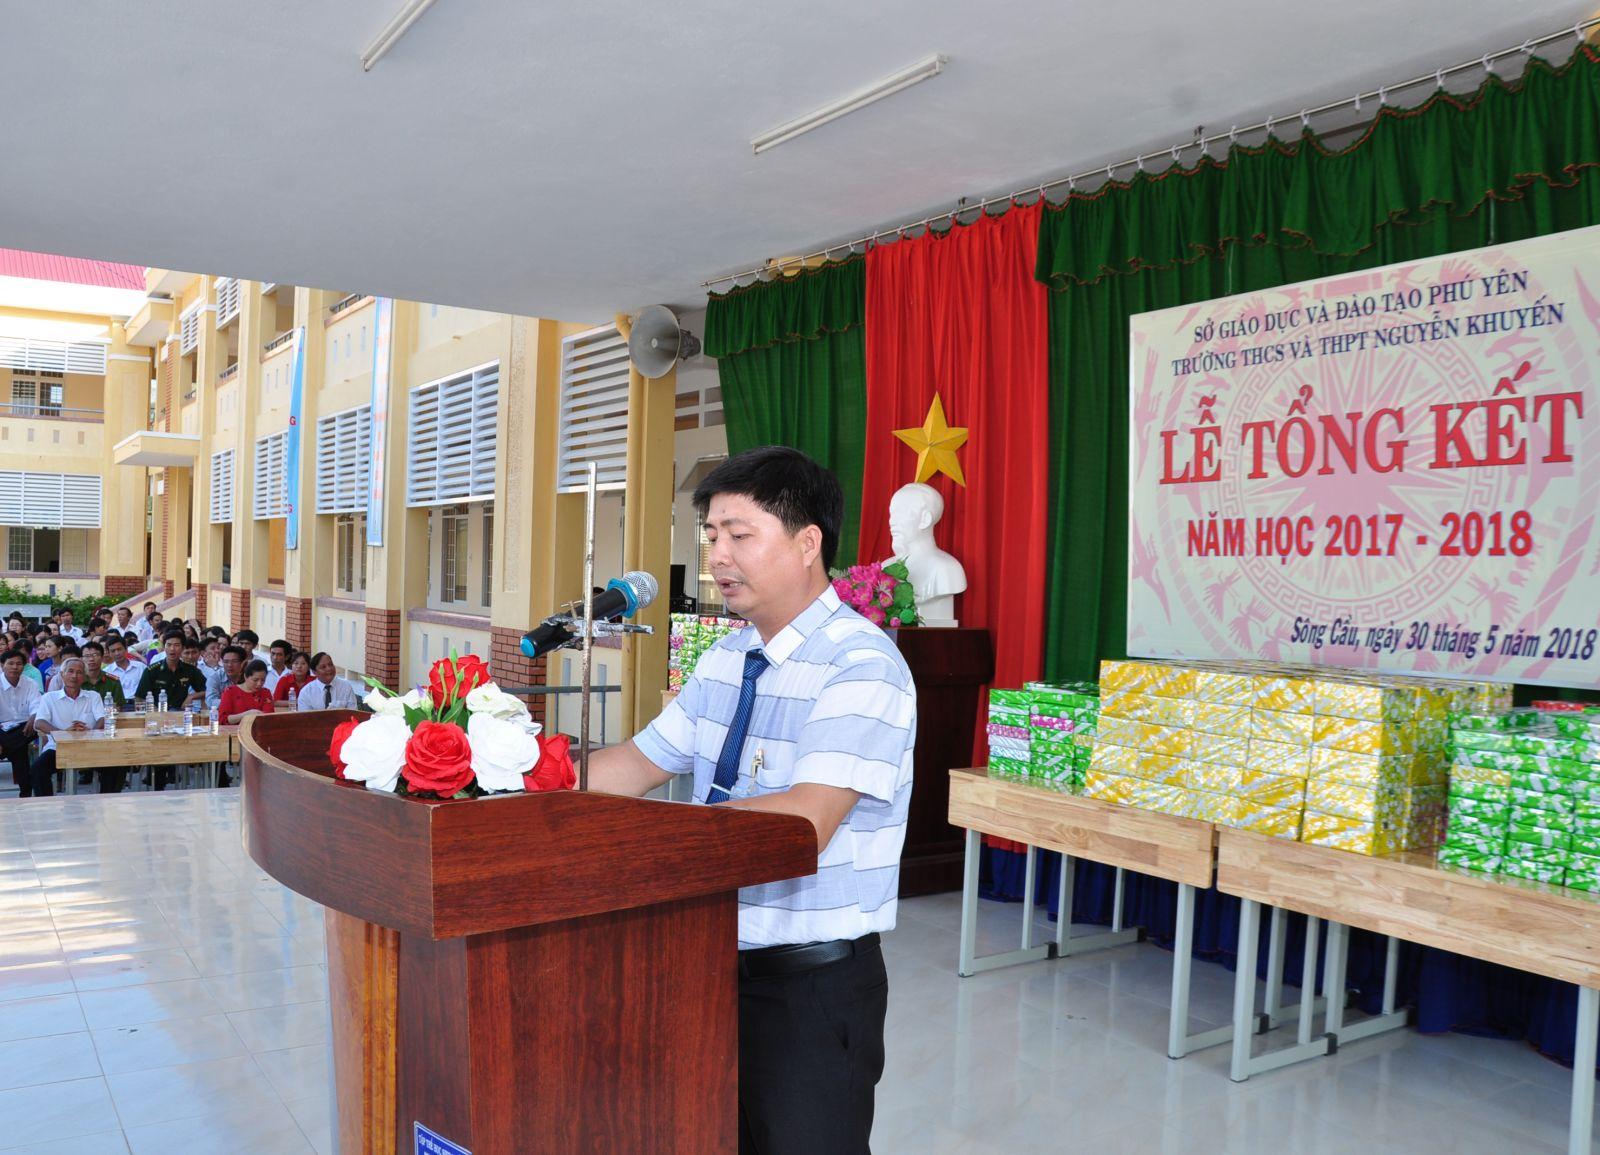 Đánh Giá Trường THCS Và THPT Nguyễn Khuyến Tỉnh Phú Yên Có Tốt Không?